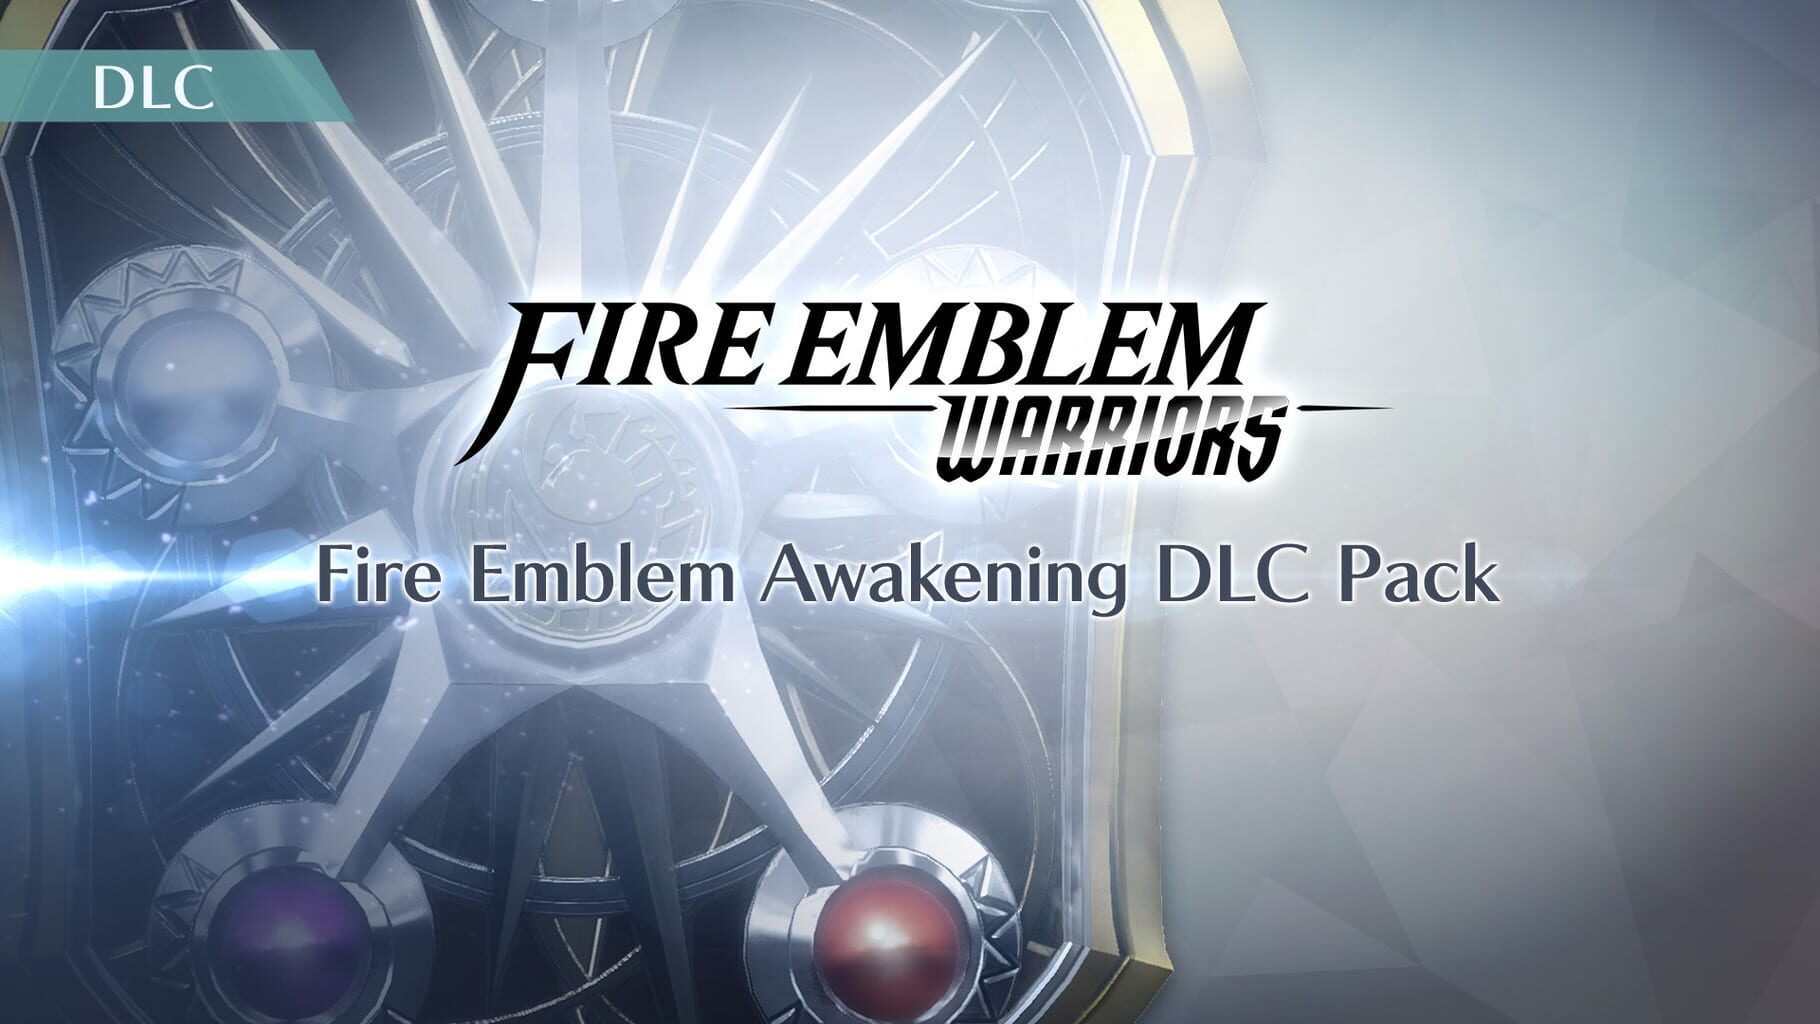 Fire Emblem Warriors: Fire Emblem Awakening DLC Pack artwork